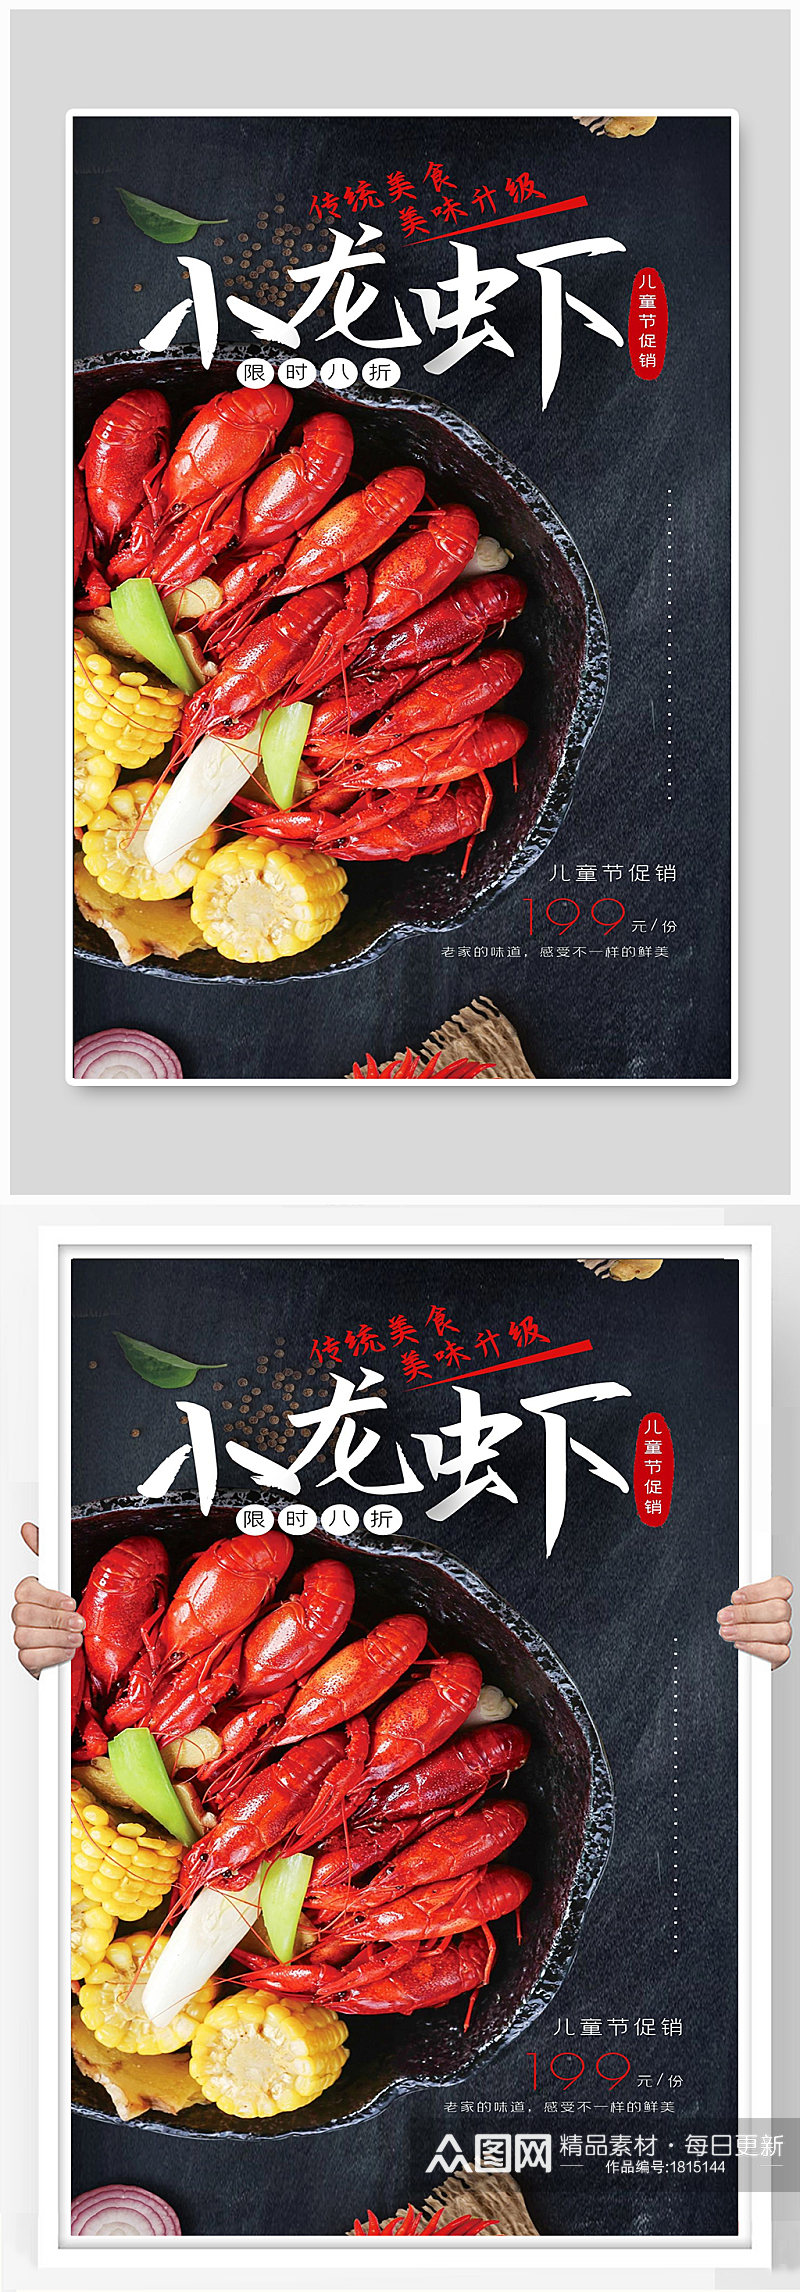 美食小龙虾美味宣传海报素材